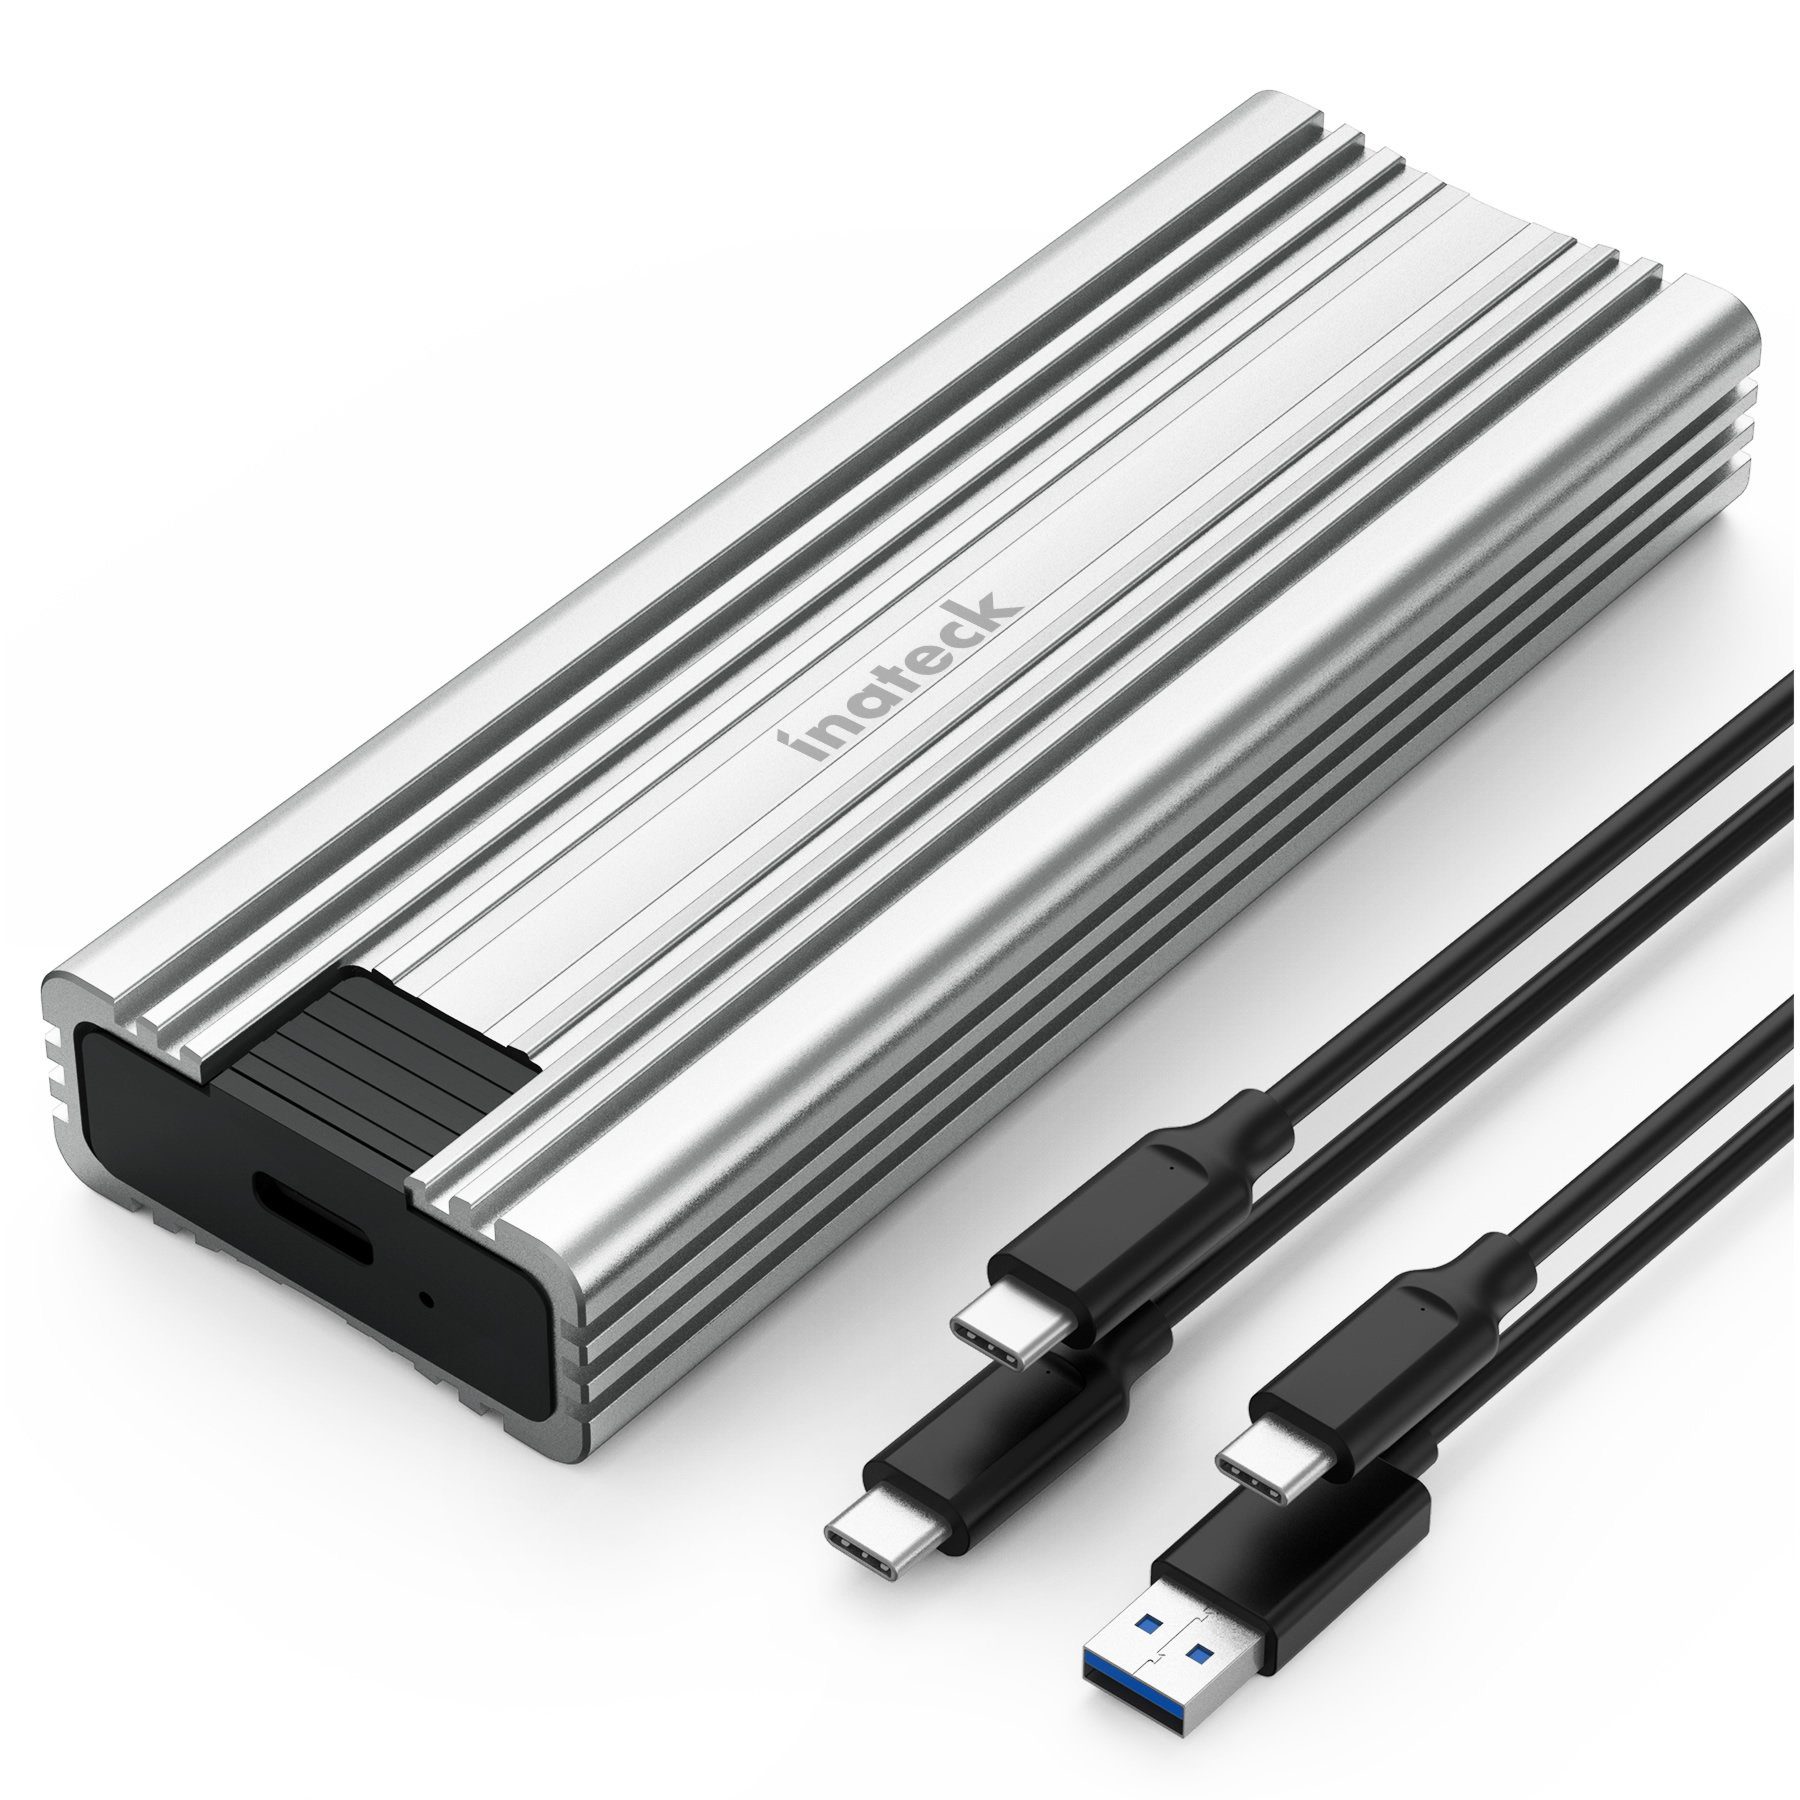 Inateck Festplatten-Gehäuse NVMe M.2 A zu Festplattengehäuse, Gbps, C USB C silber zu Kabel USB mit C 10 und